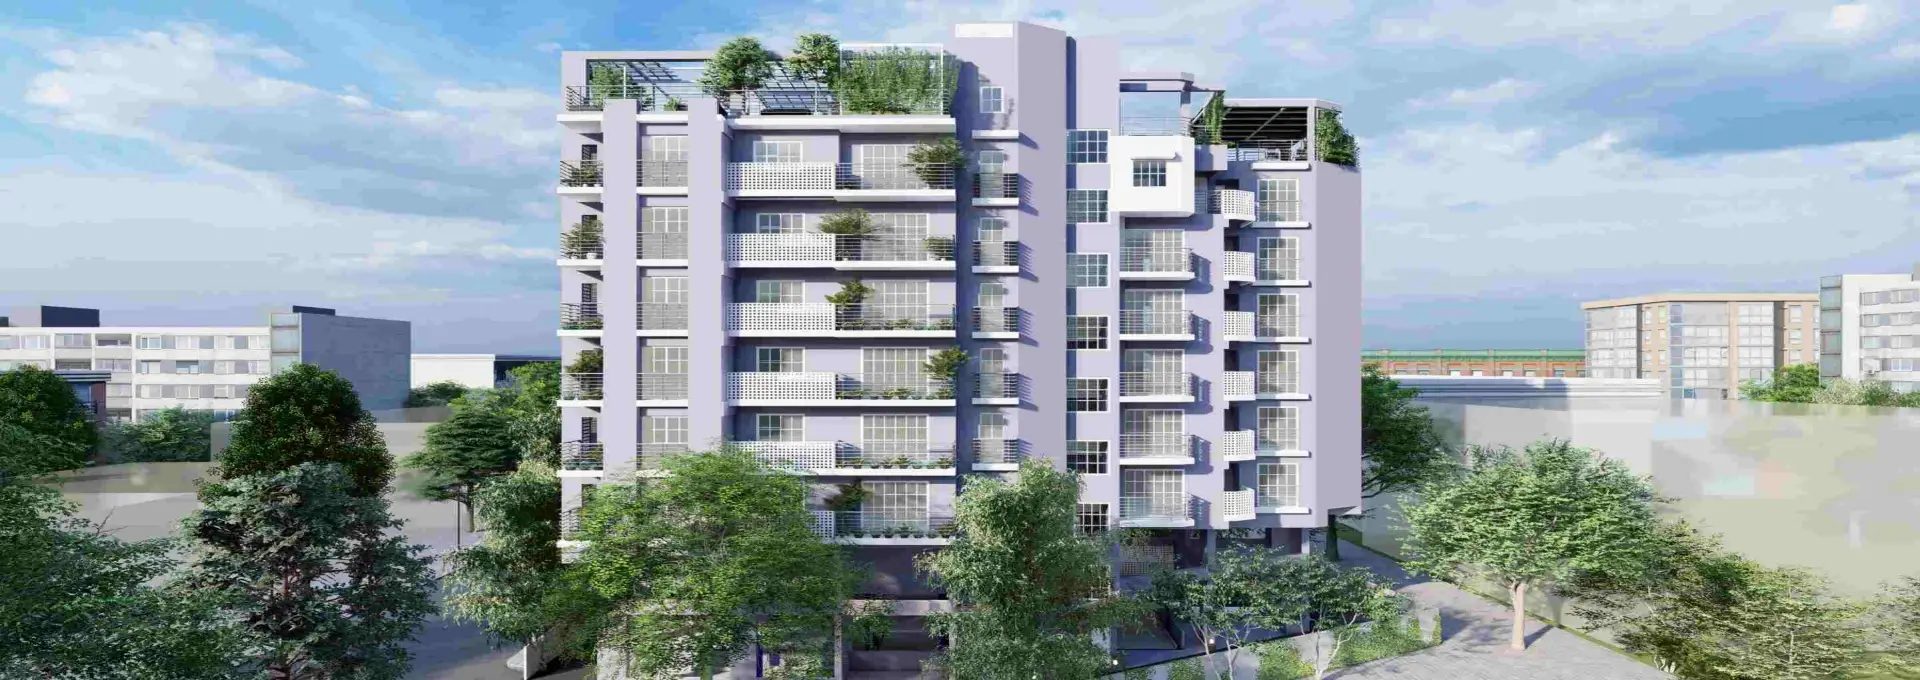 2, 3 BHK Apartments, Shivajinagar, Pune